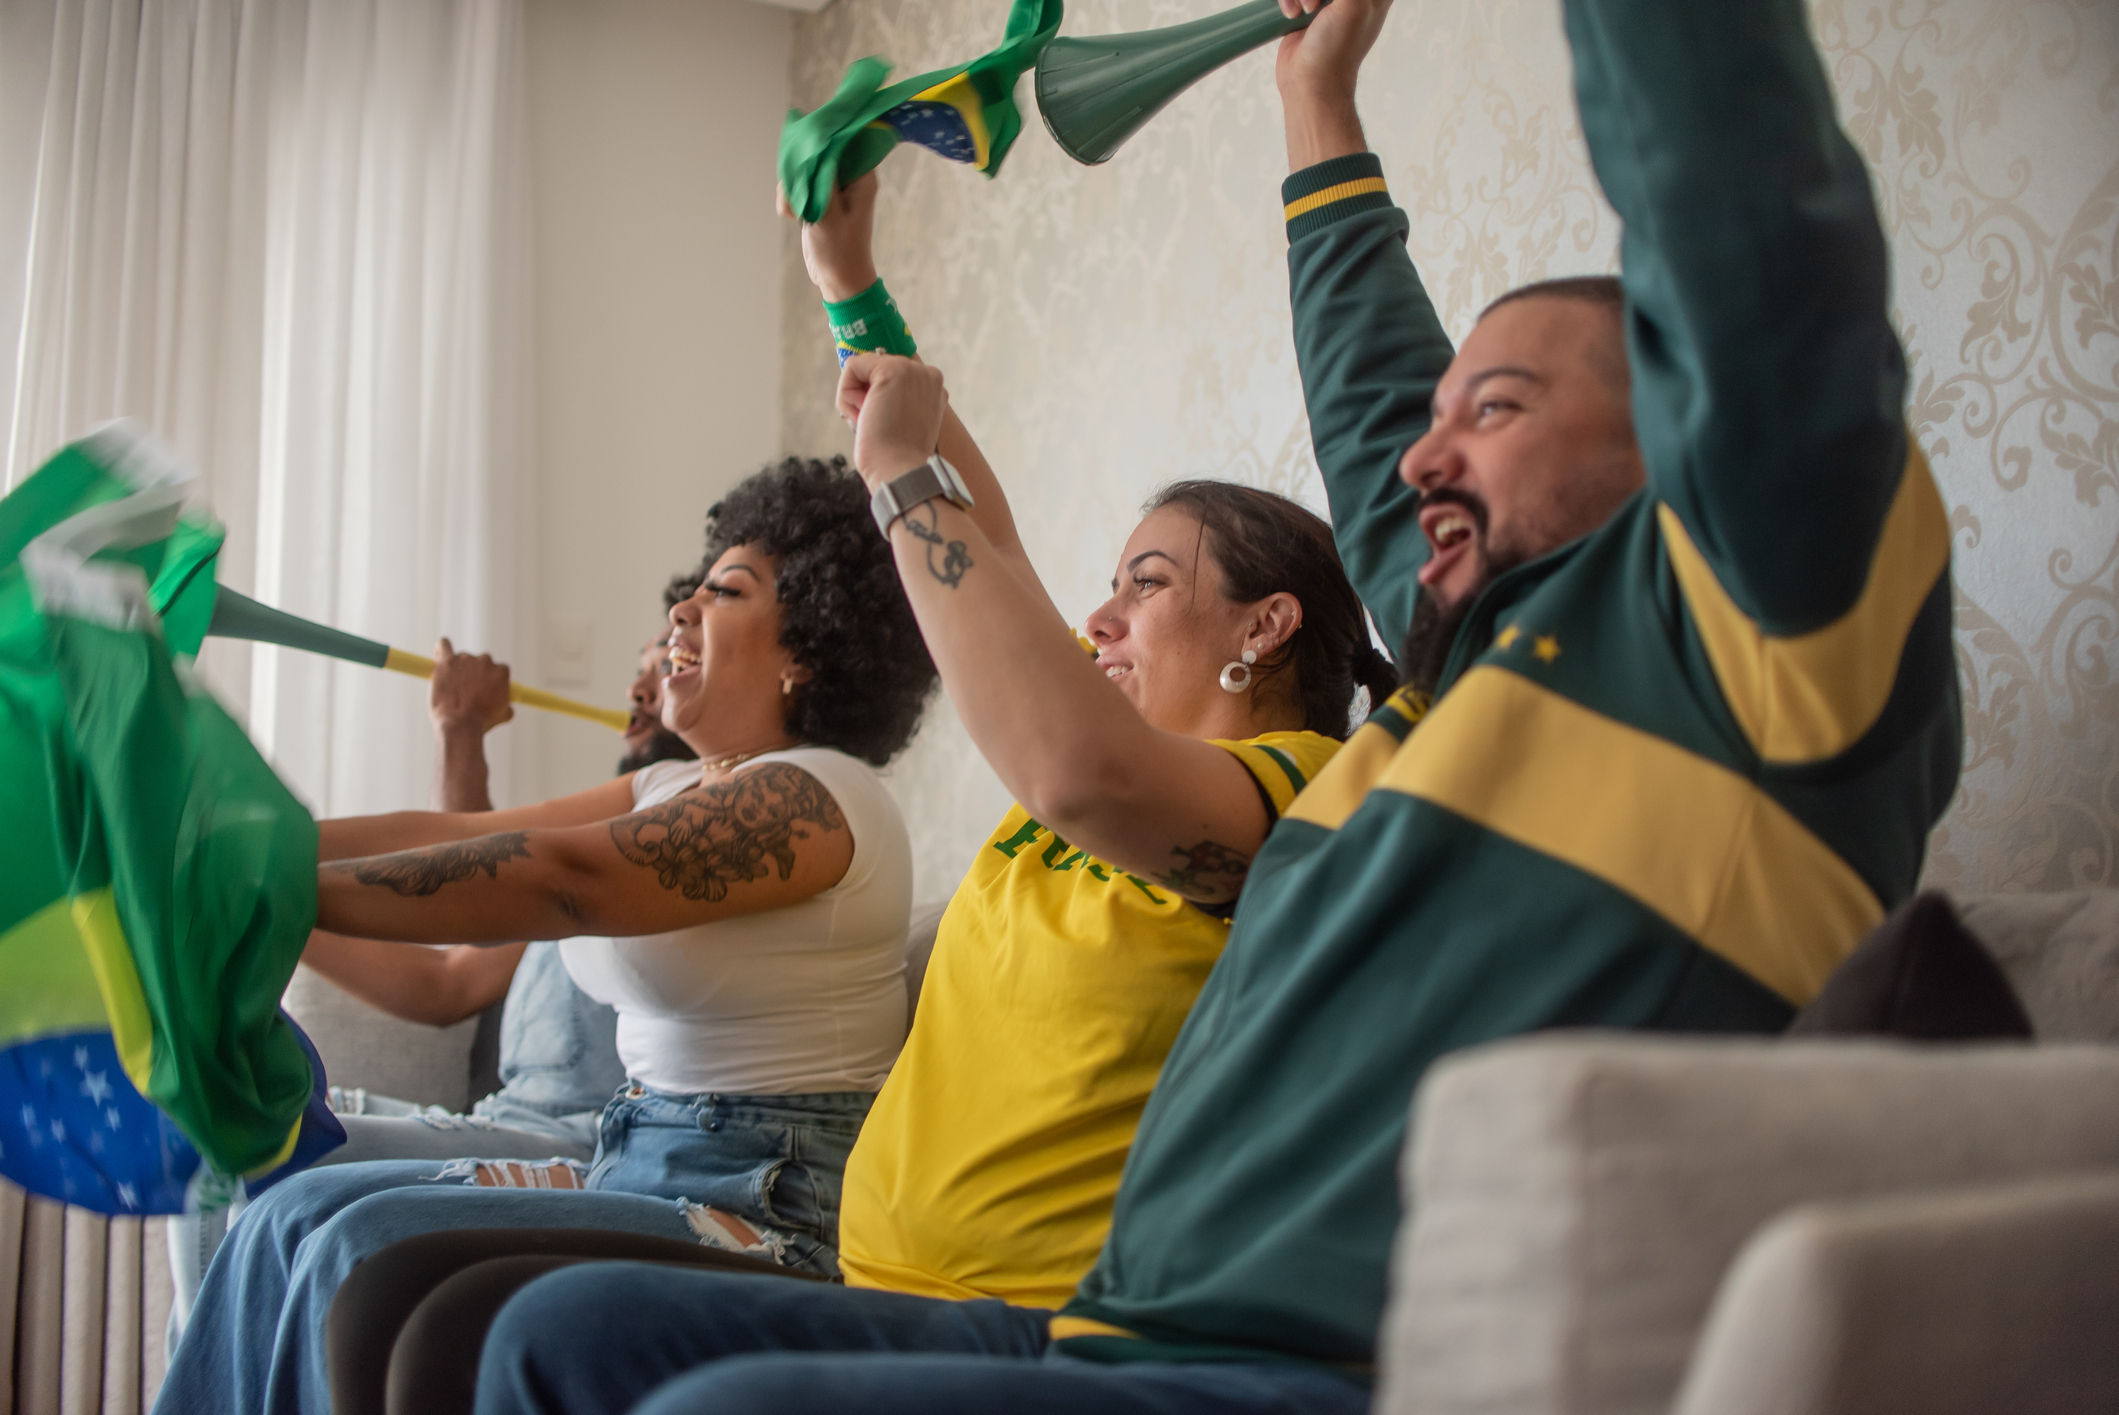 Conforto na Sala - As melhores Dicas para Curtir a Copa do Mundo!